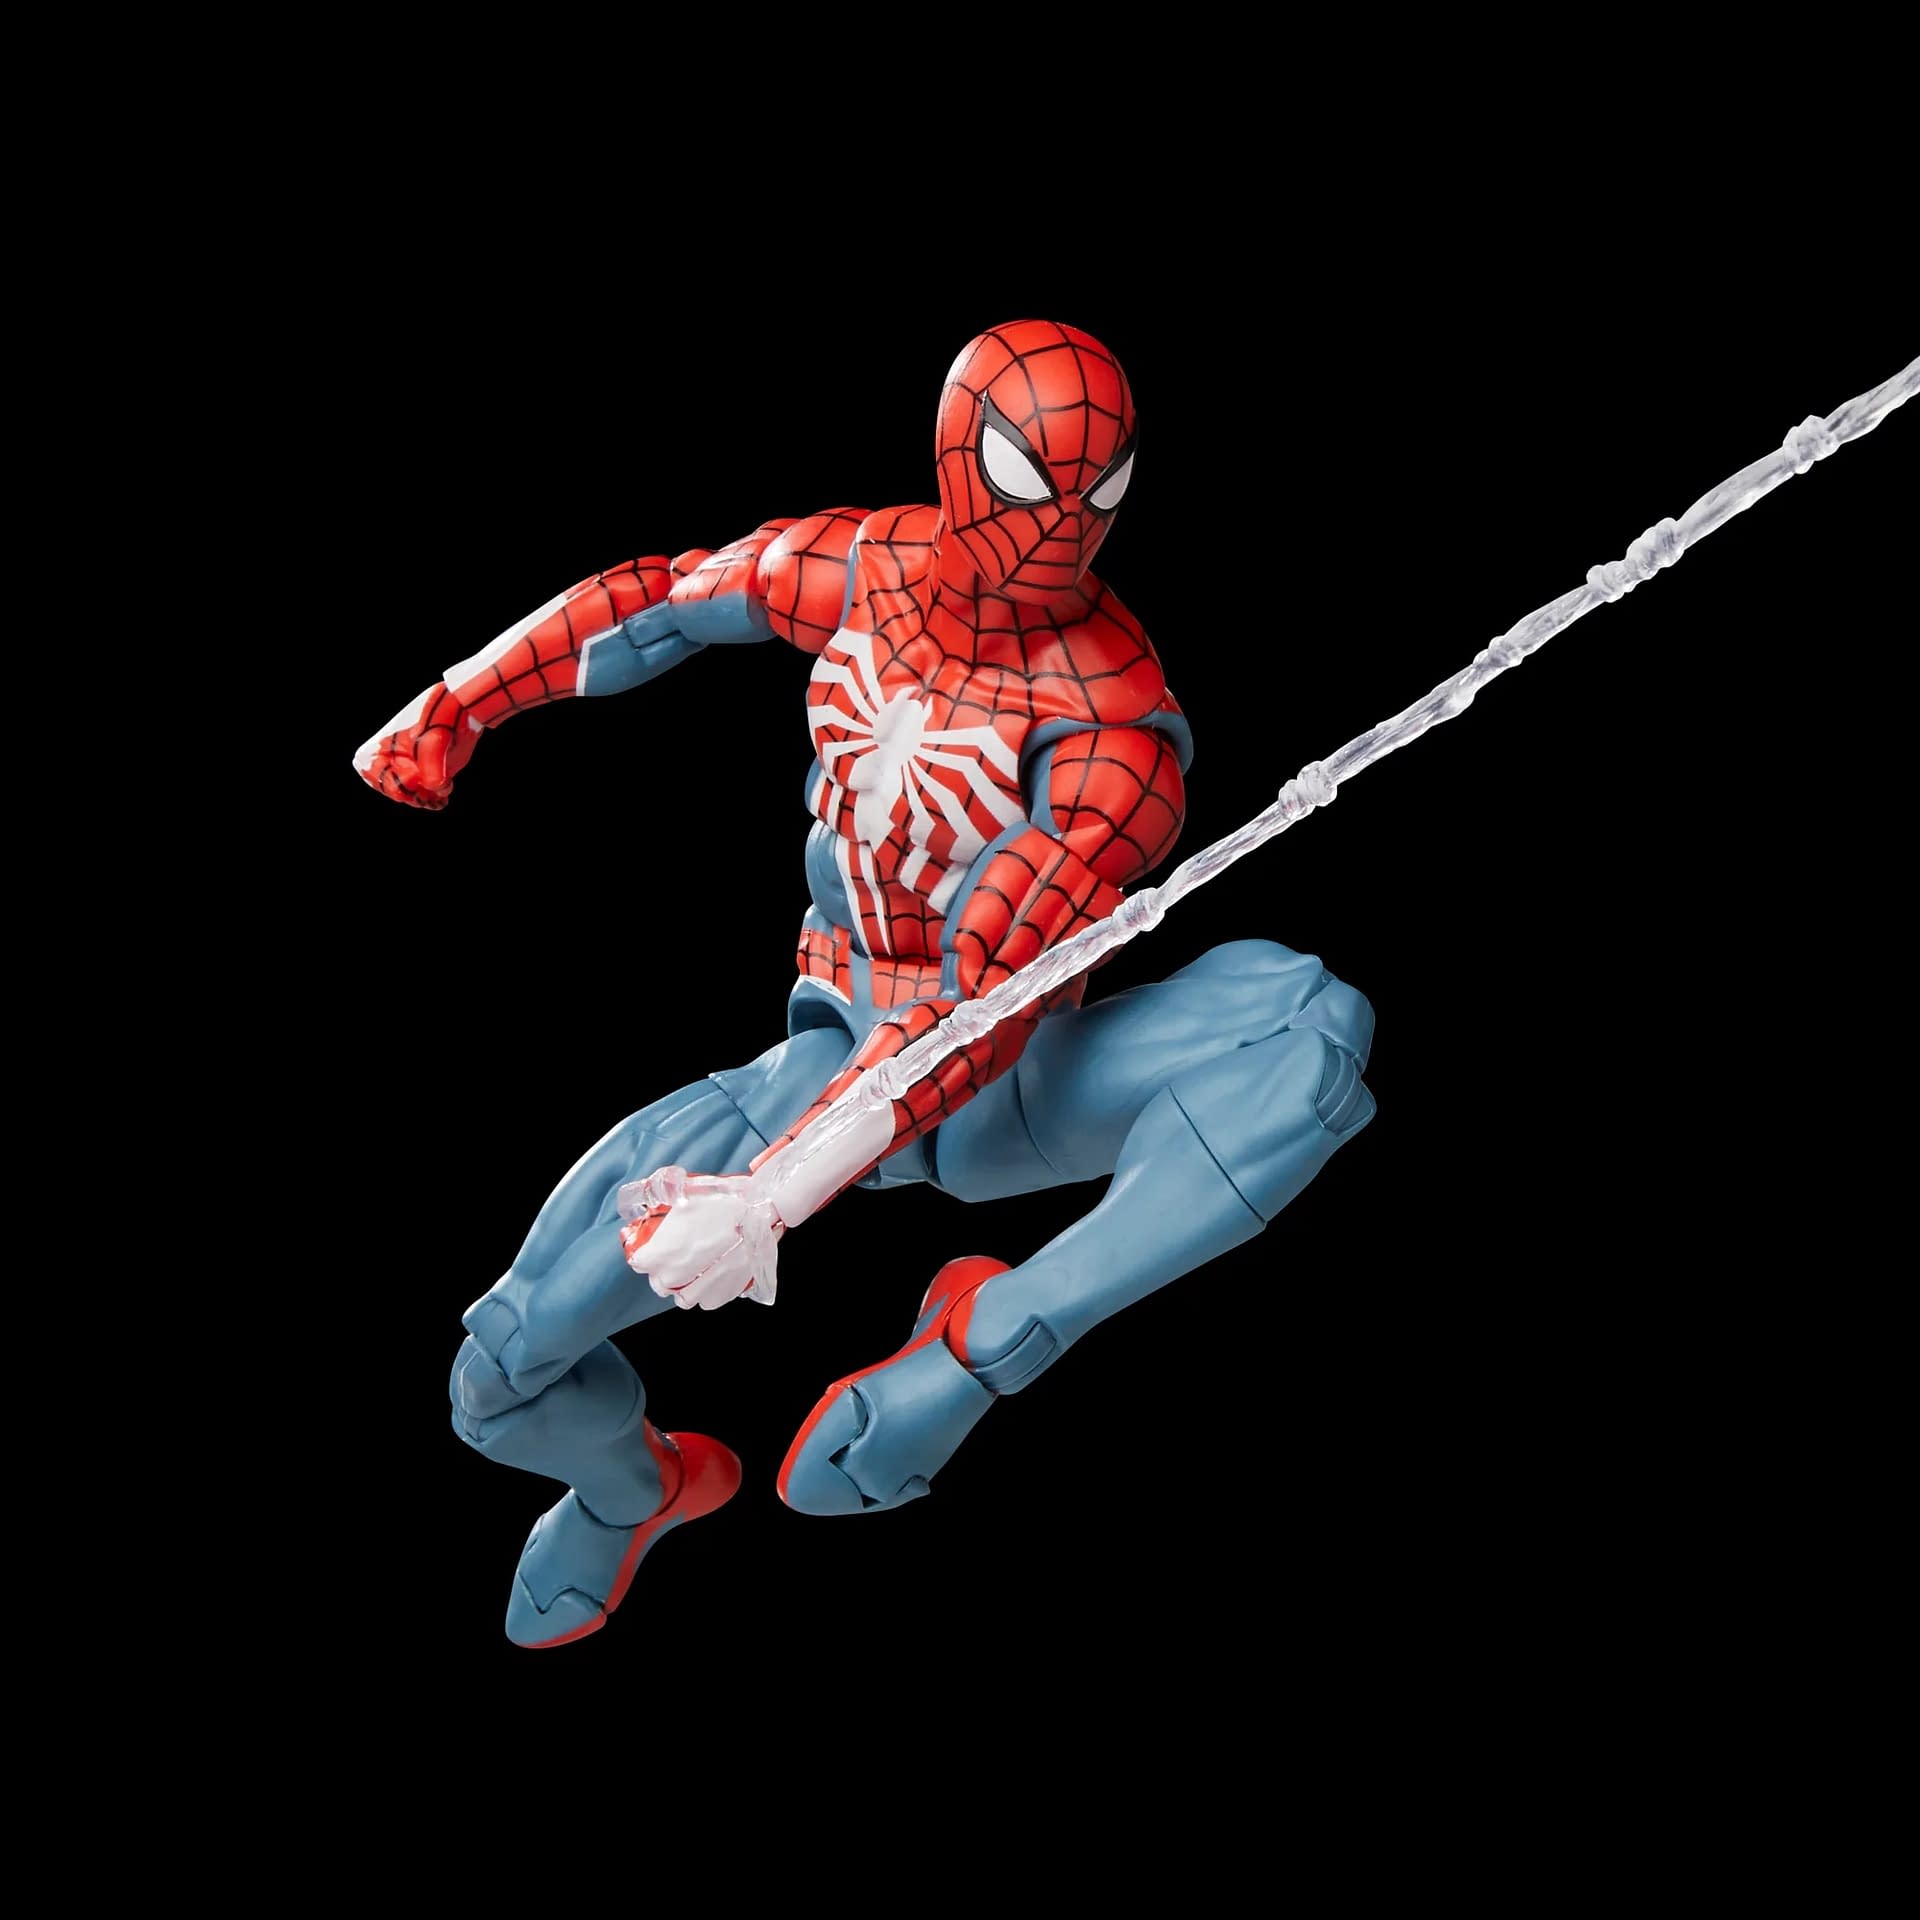 Marvels Spider Man Marvel Legends Figure Revealed By Hasbro